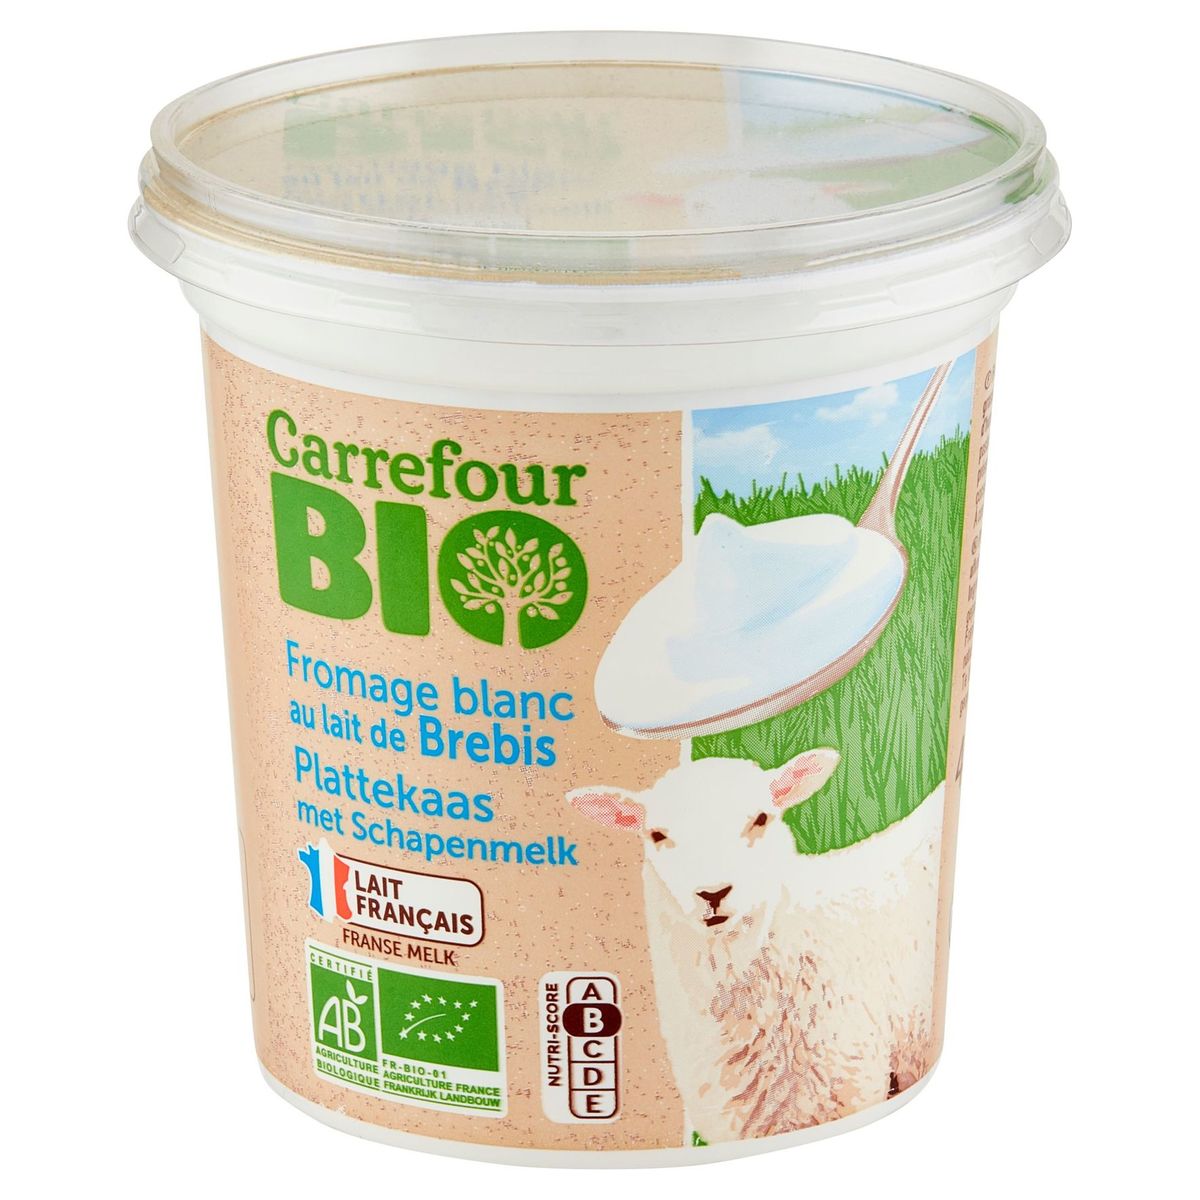 Carrefour Bio Plattekaas met Schapenmelk 400 g